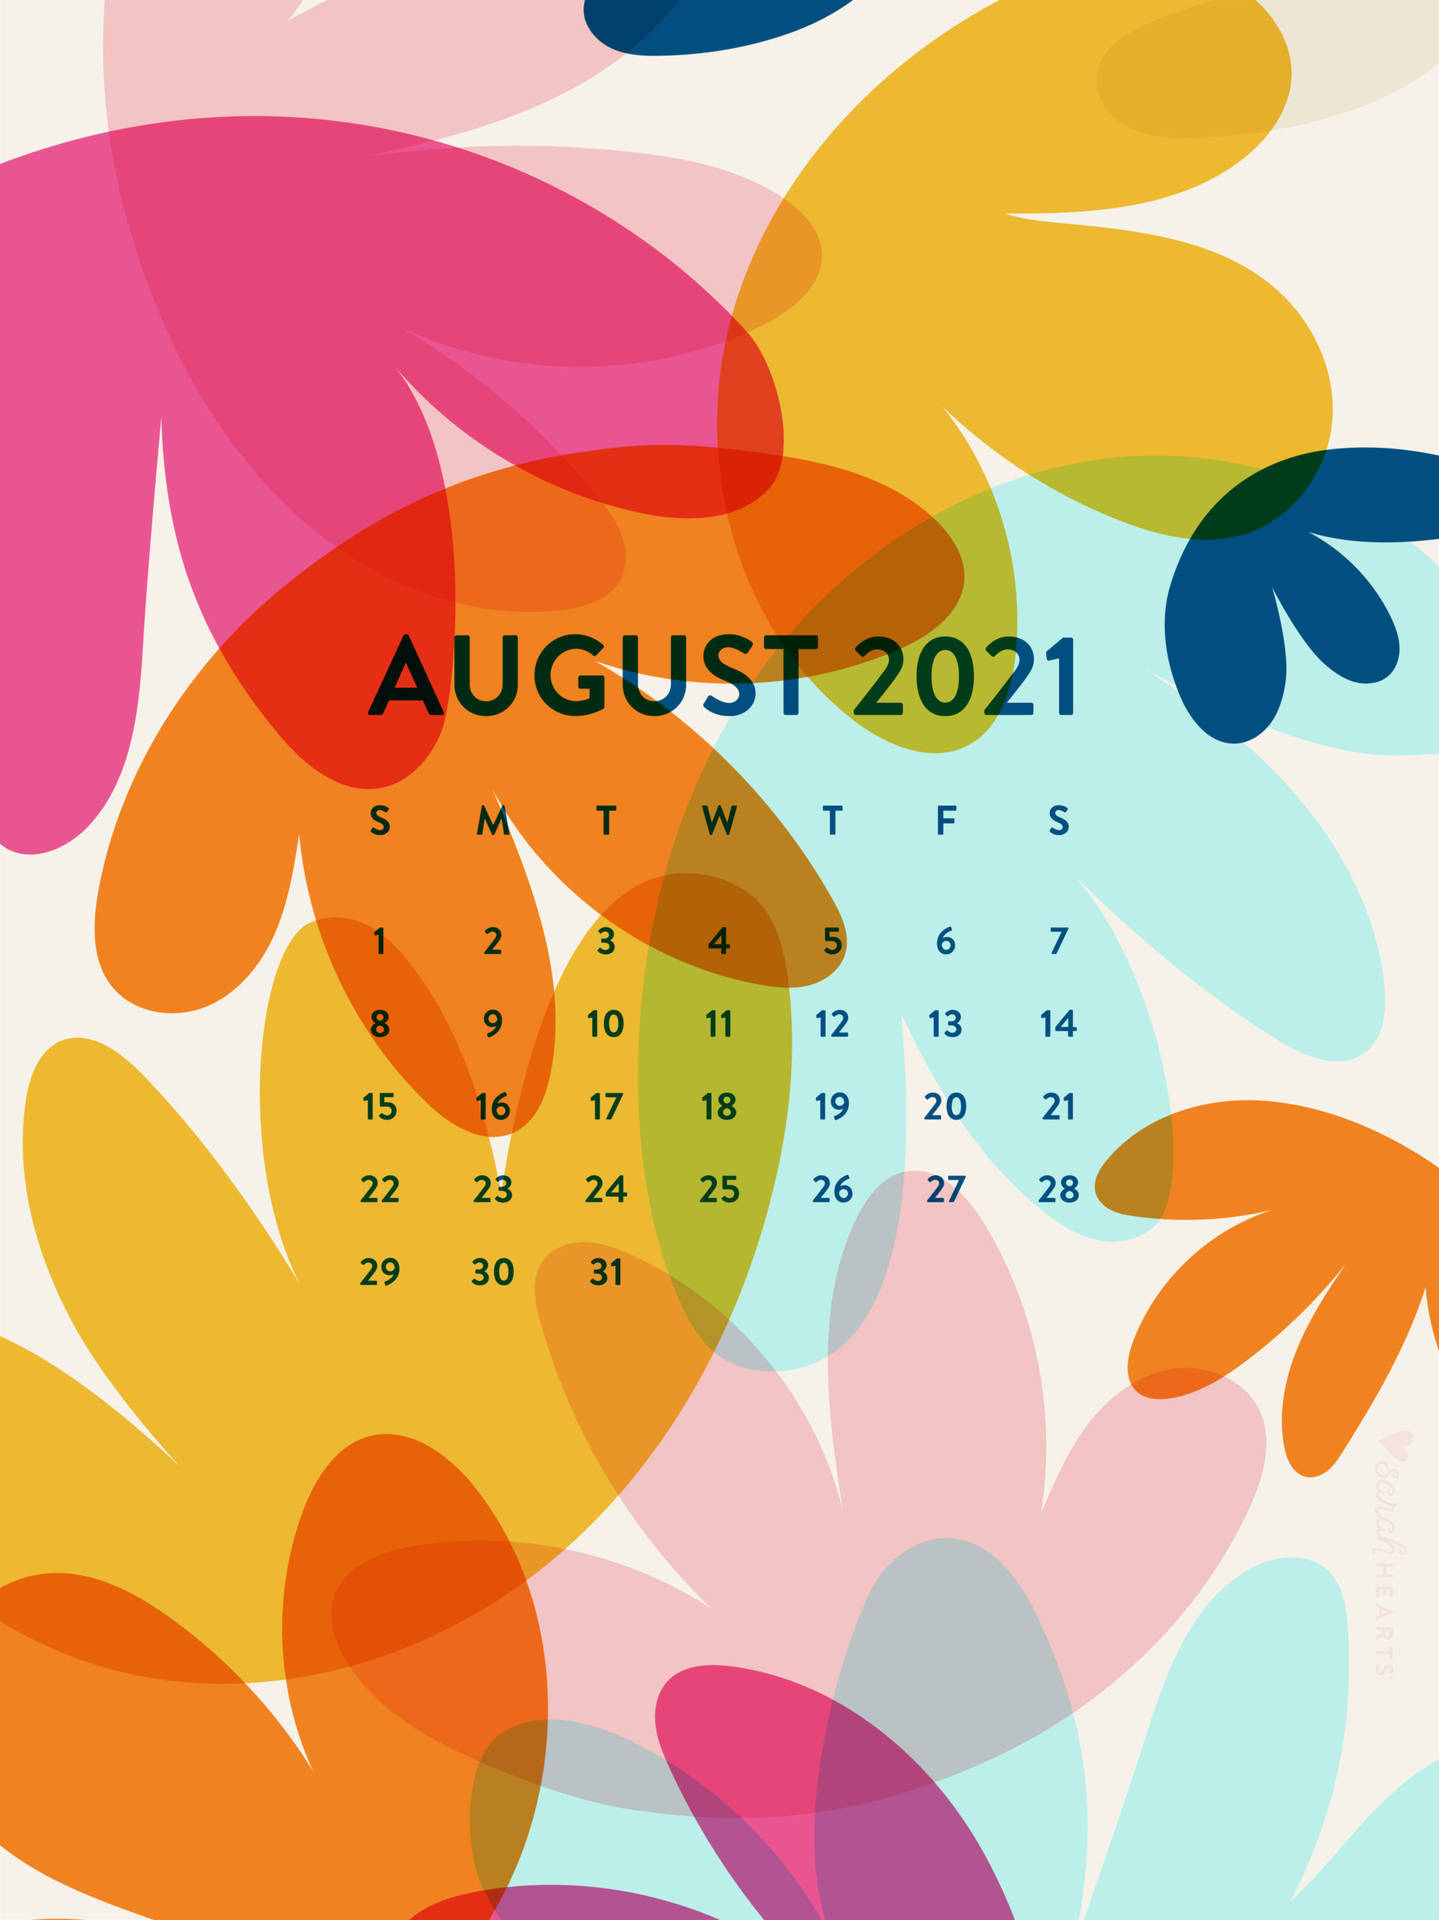 Plano De Fundo Do Calendário De Agosto De 2021